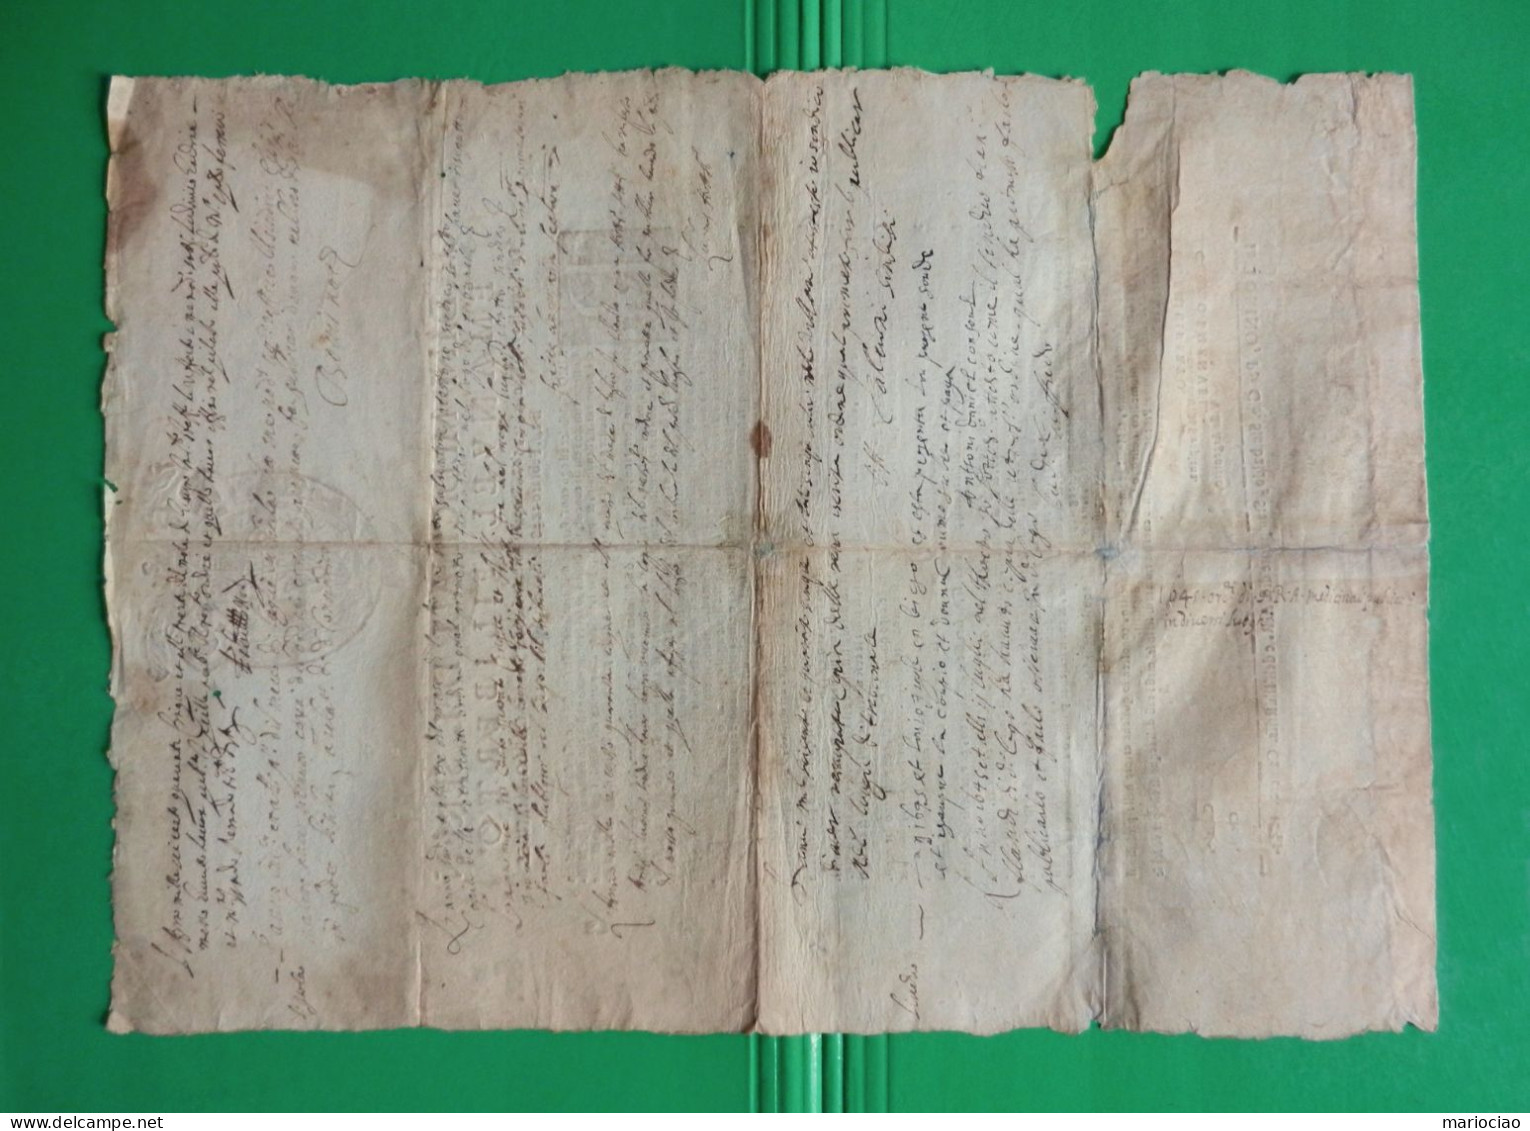 D-IT DUCATO DI SAVOIA Torino 1644 Emanuel Filiberto ORDINI MEDICINALI - Historical Documents